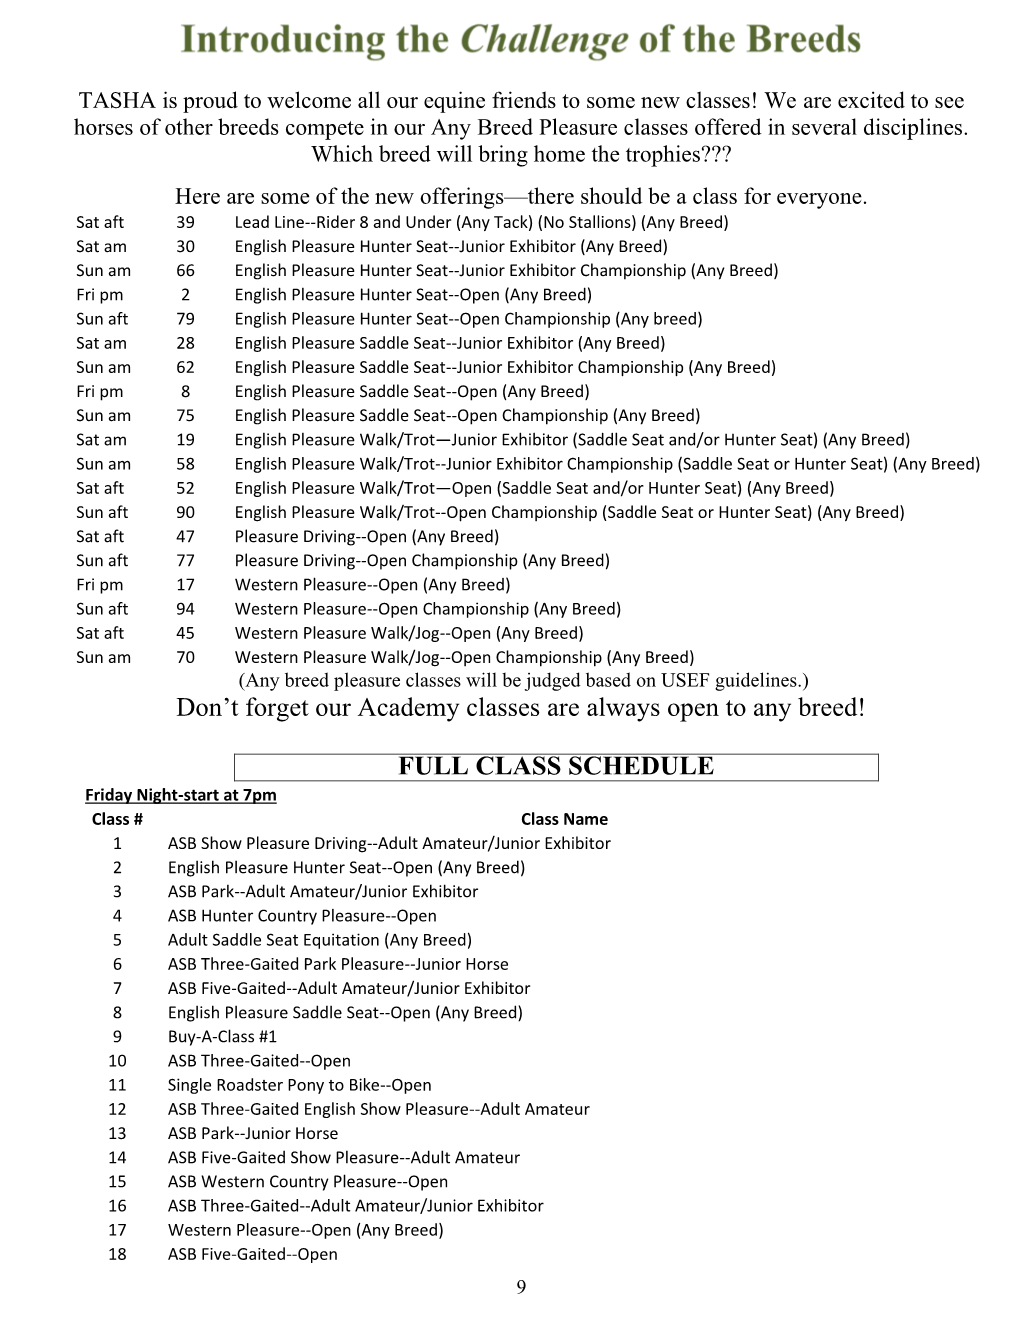 Full Class Schedule